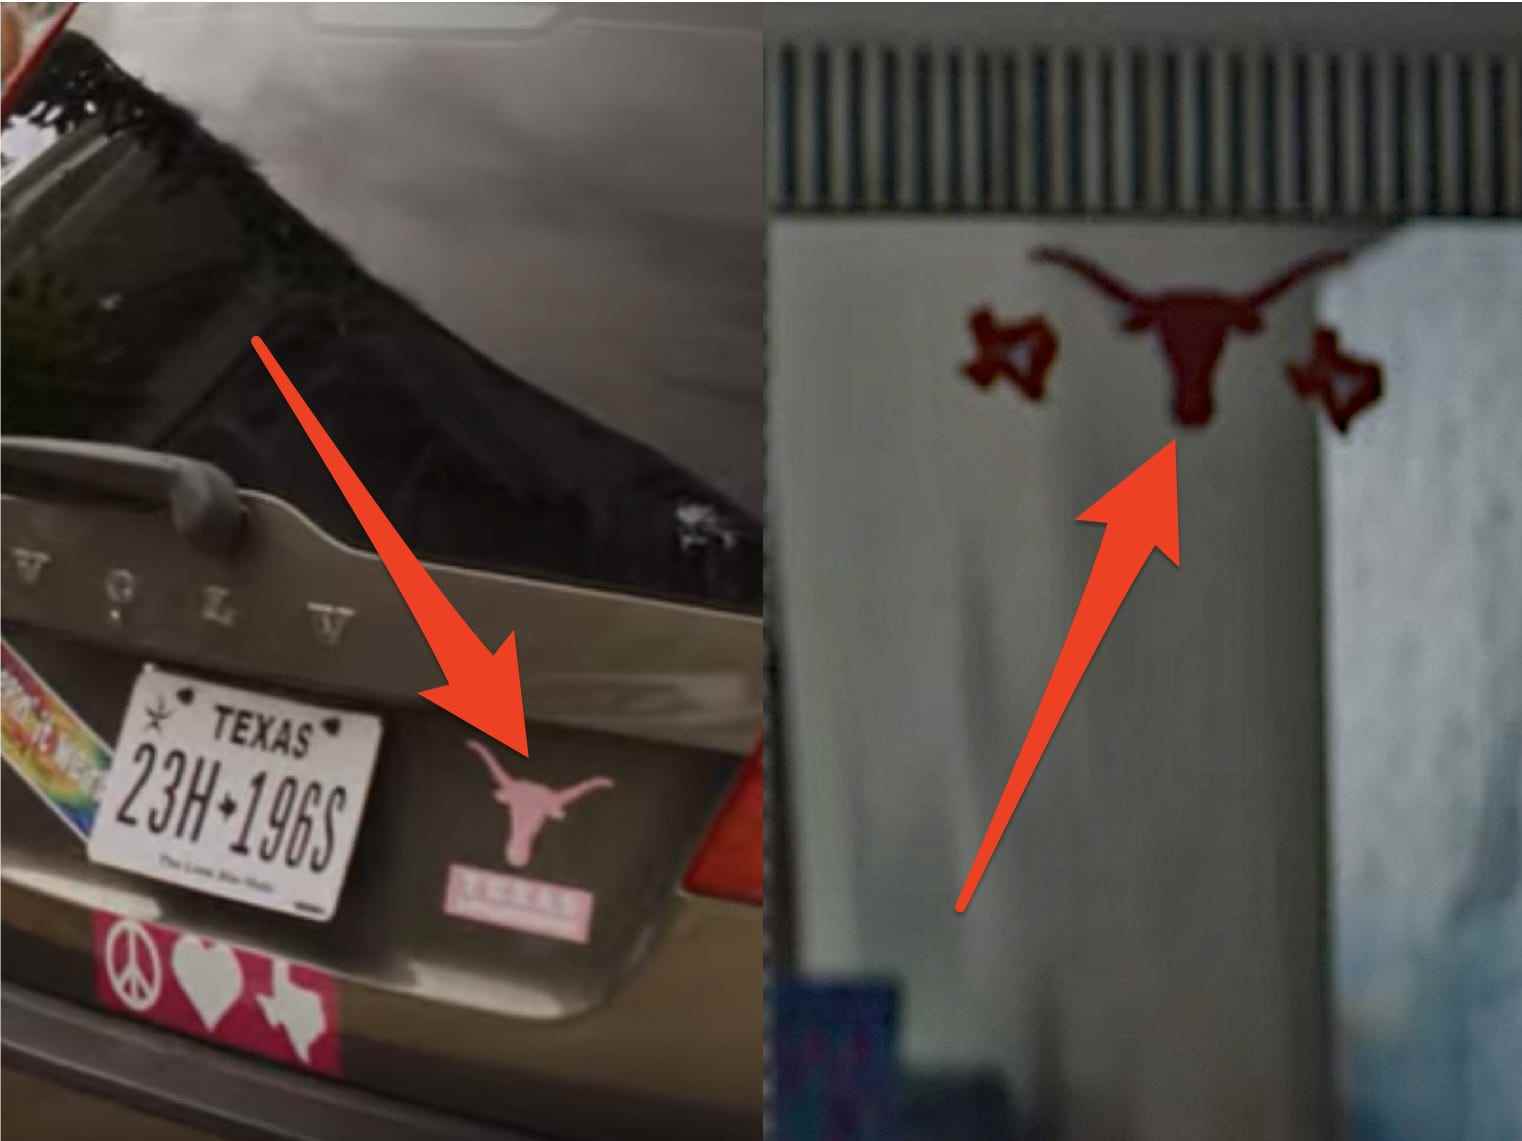 Texas-Autoaufkleber auf einem Auto und Texas-Aufkleber auf einem Spiegel sehen in beide Richtungen aus